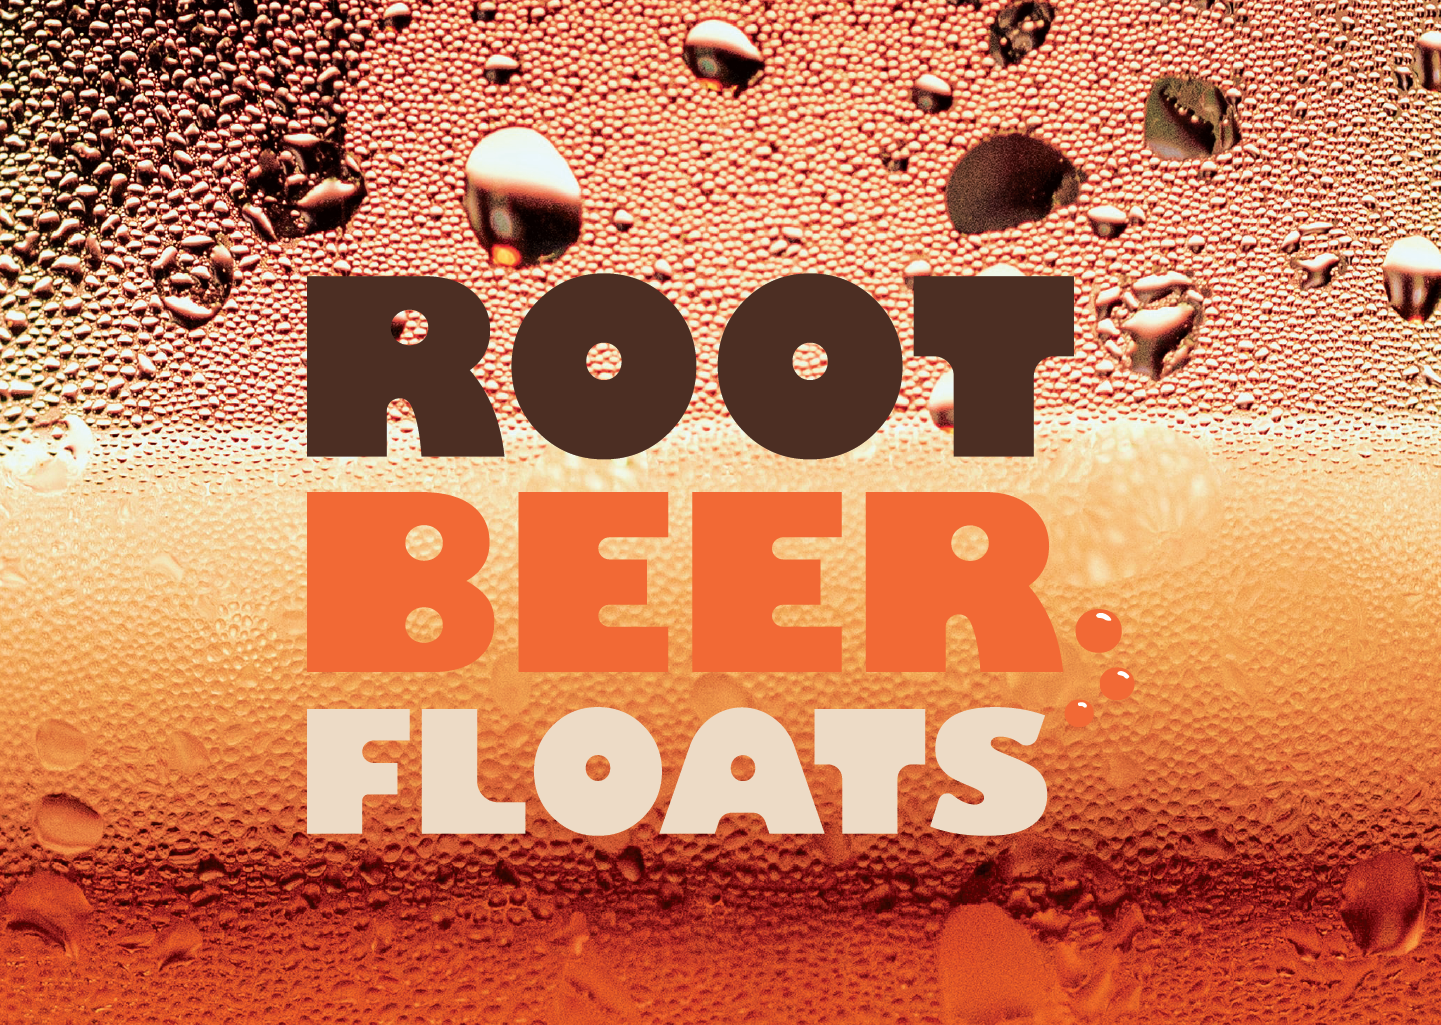 Root Beer Floats